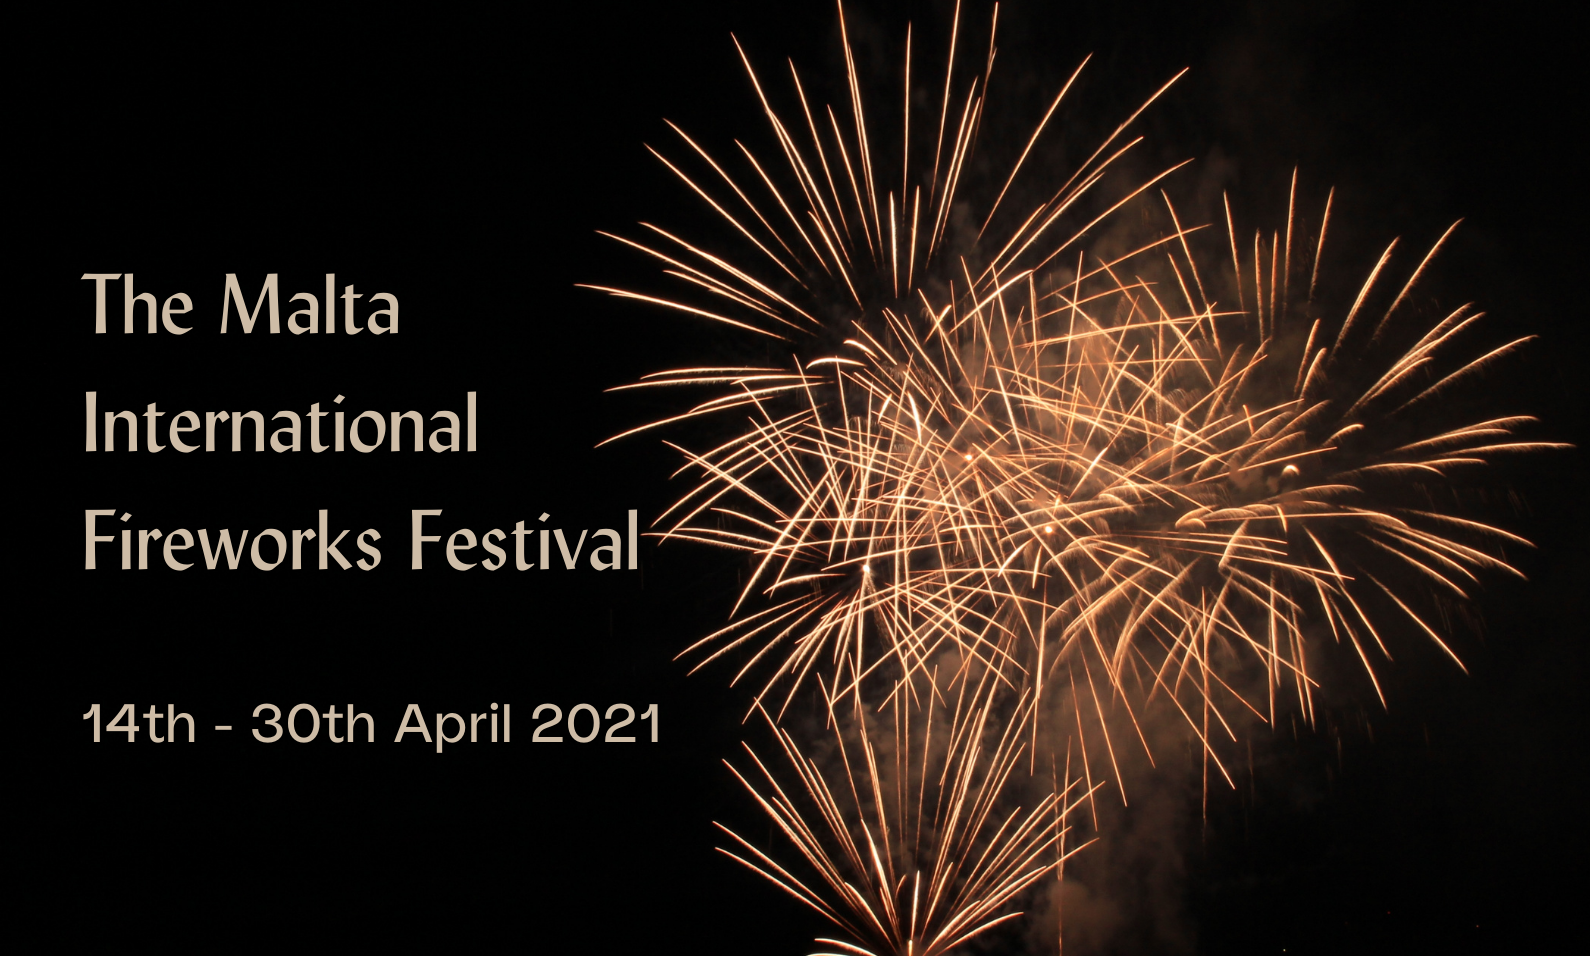 The Malta International Fireworks Festival 2021